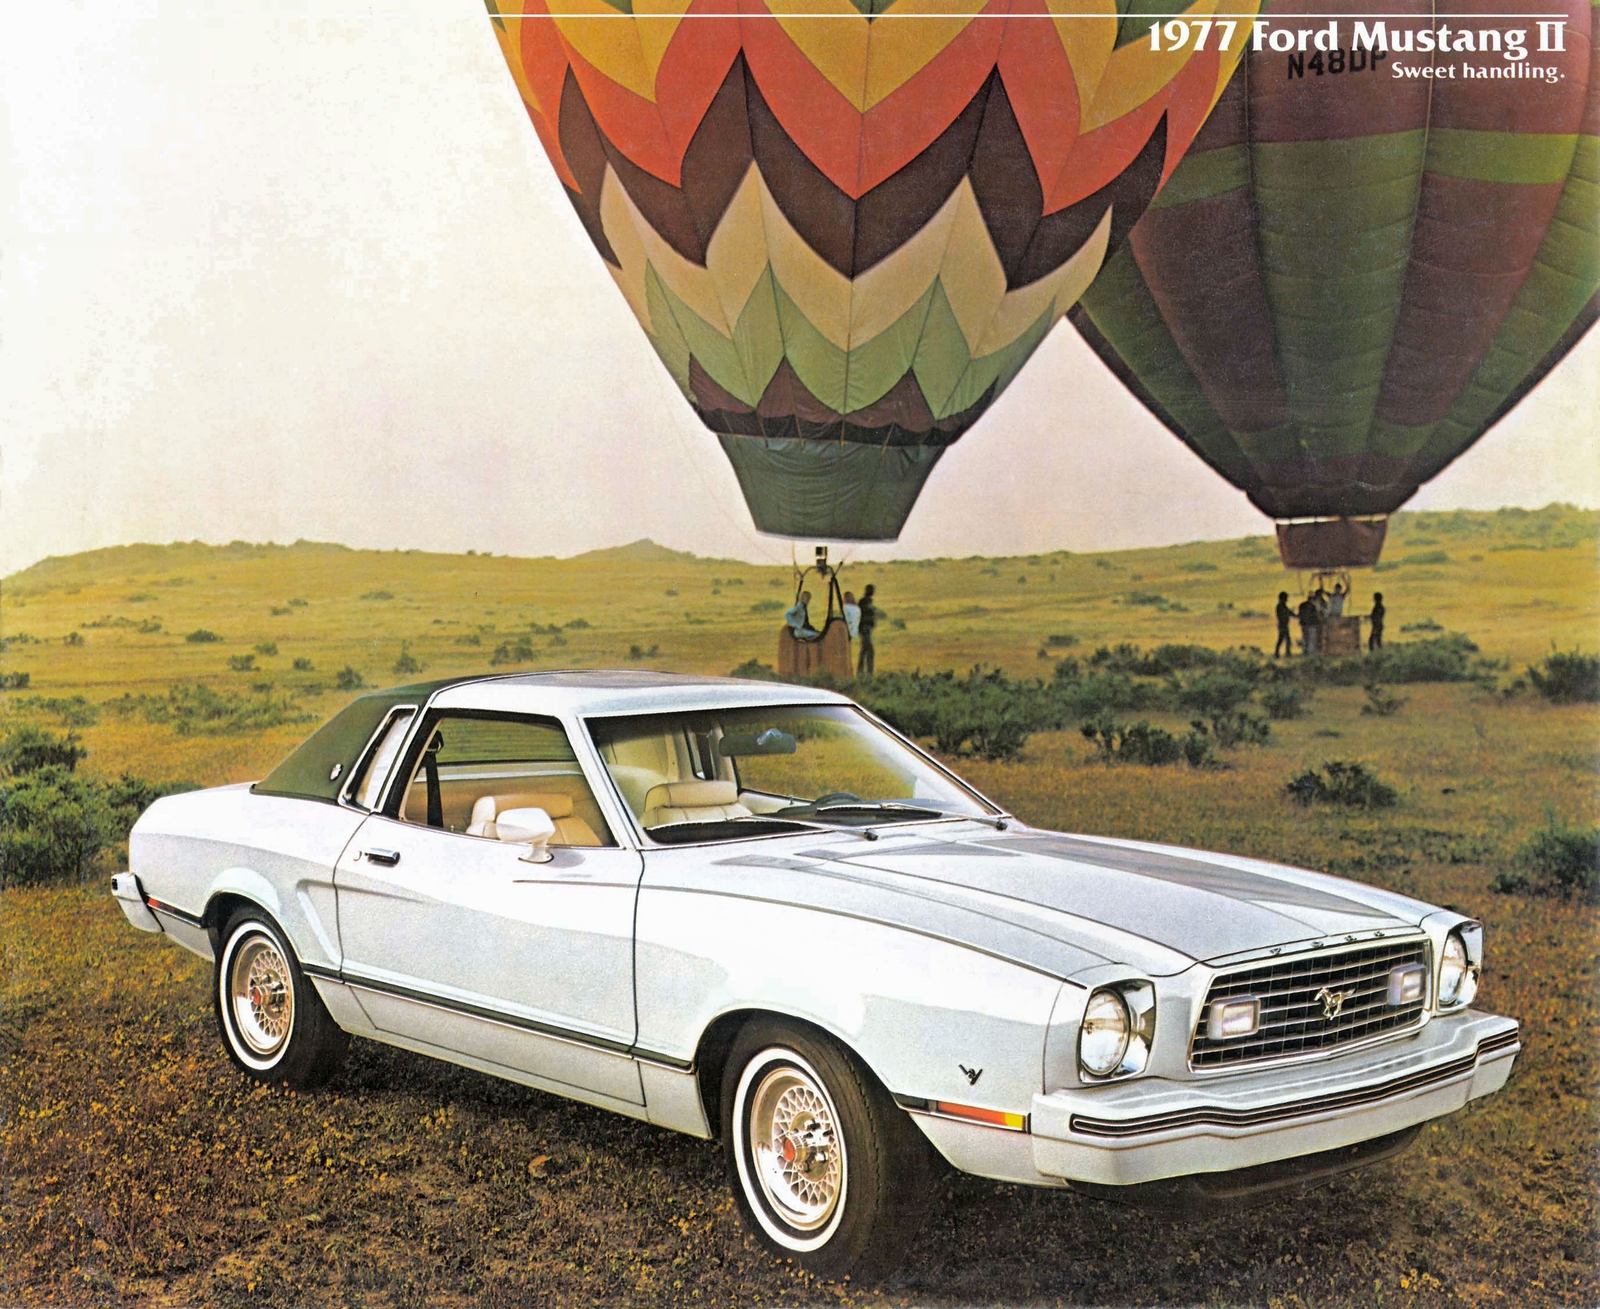 n_1977 Ford Mustang II-01.jpg